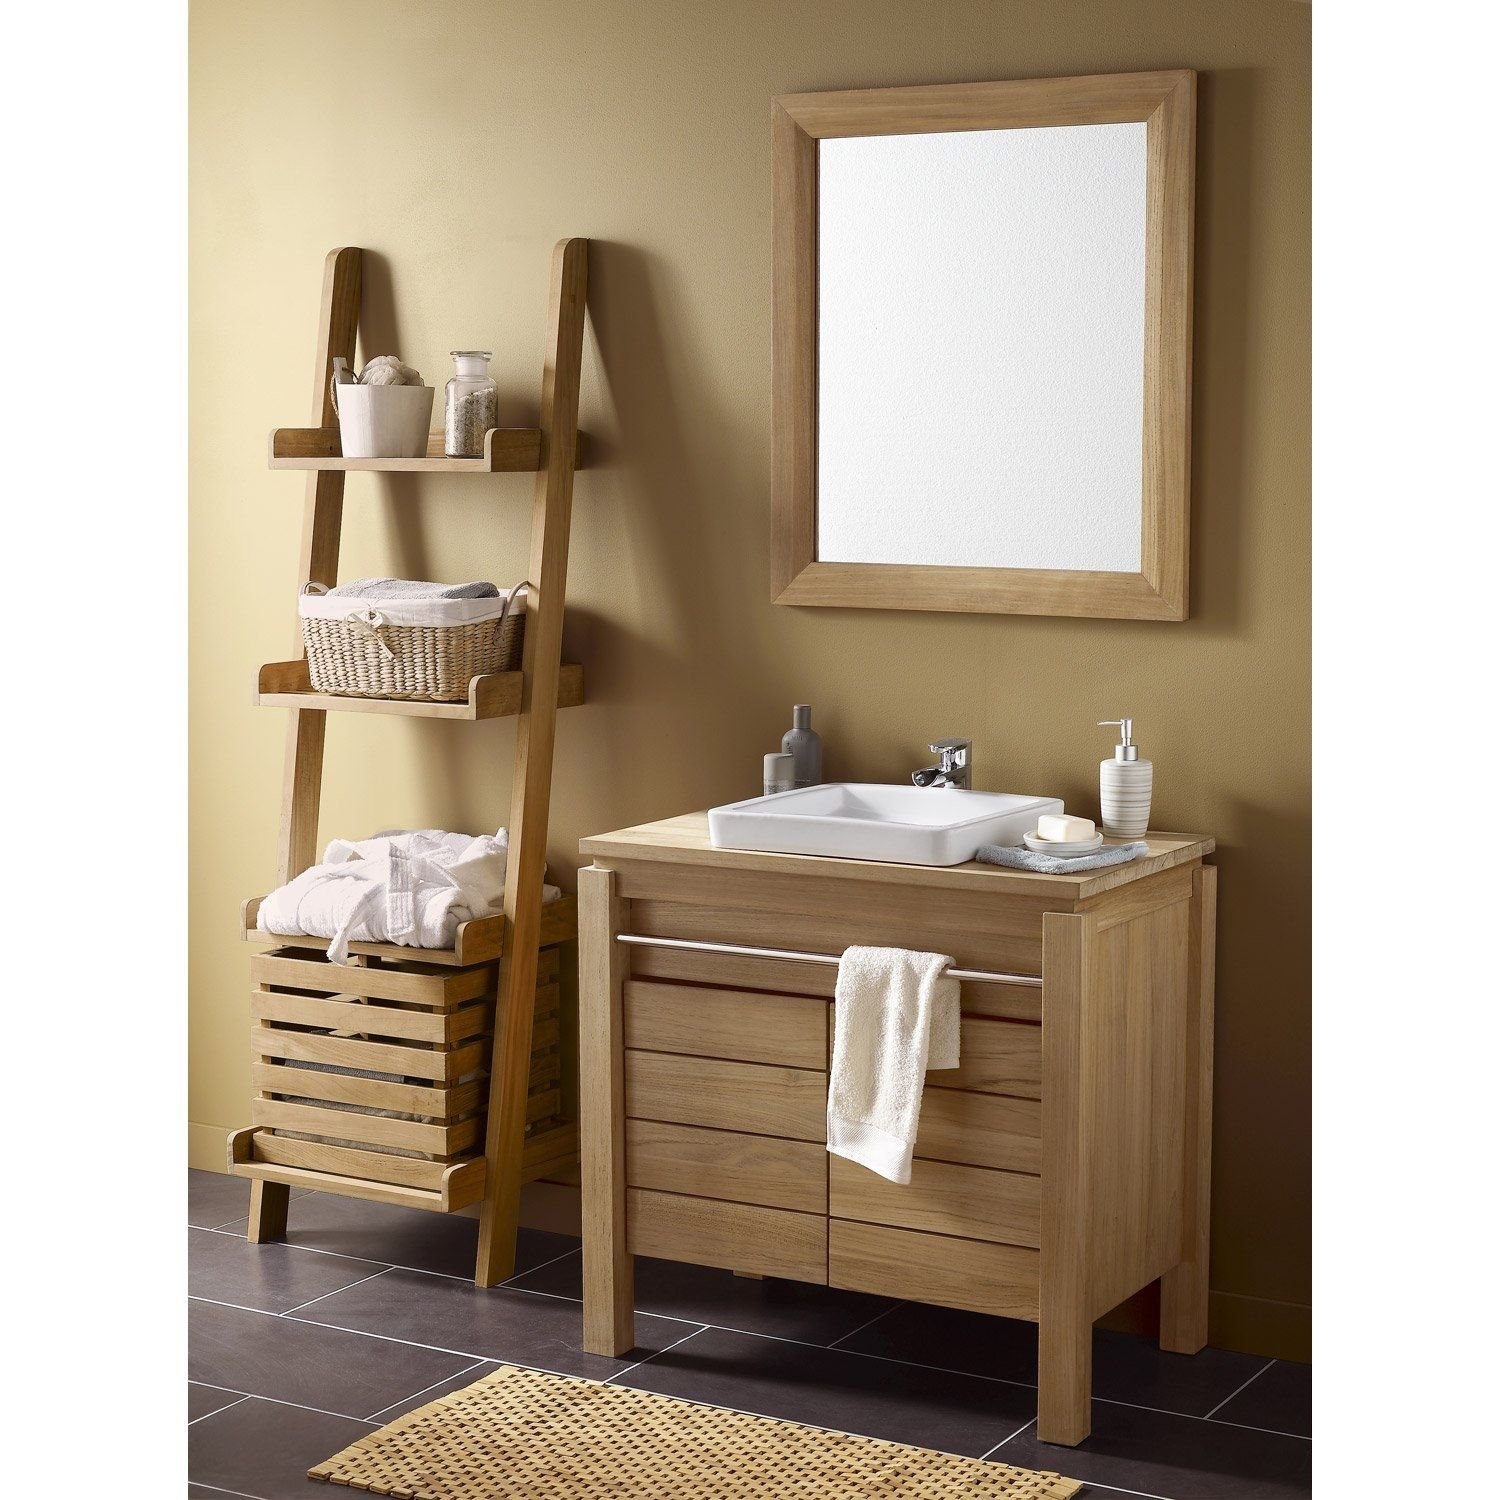 Леруа шкаф в ванну. Мебель для ванной ретро Леруа Мерлен. Мебель в ванную комнату. Деревянная мебель для ванной. Шкафчик в ванную из дерева.